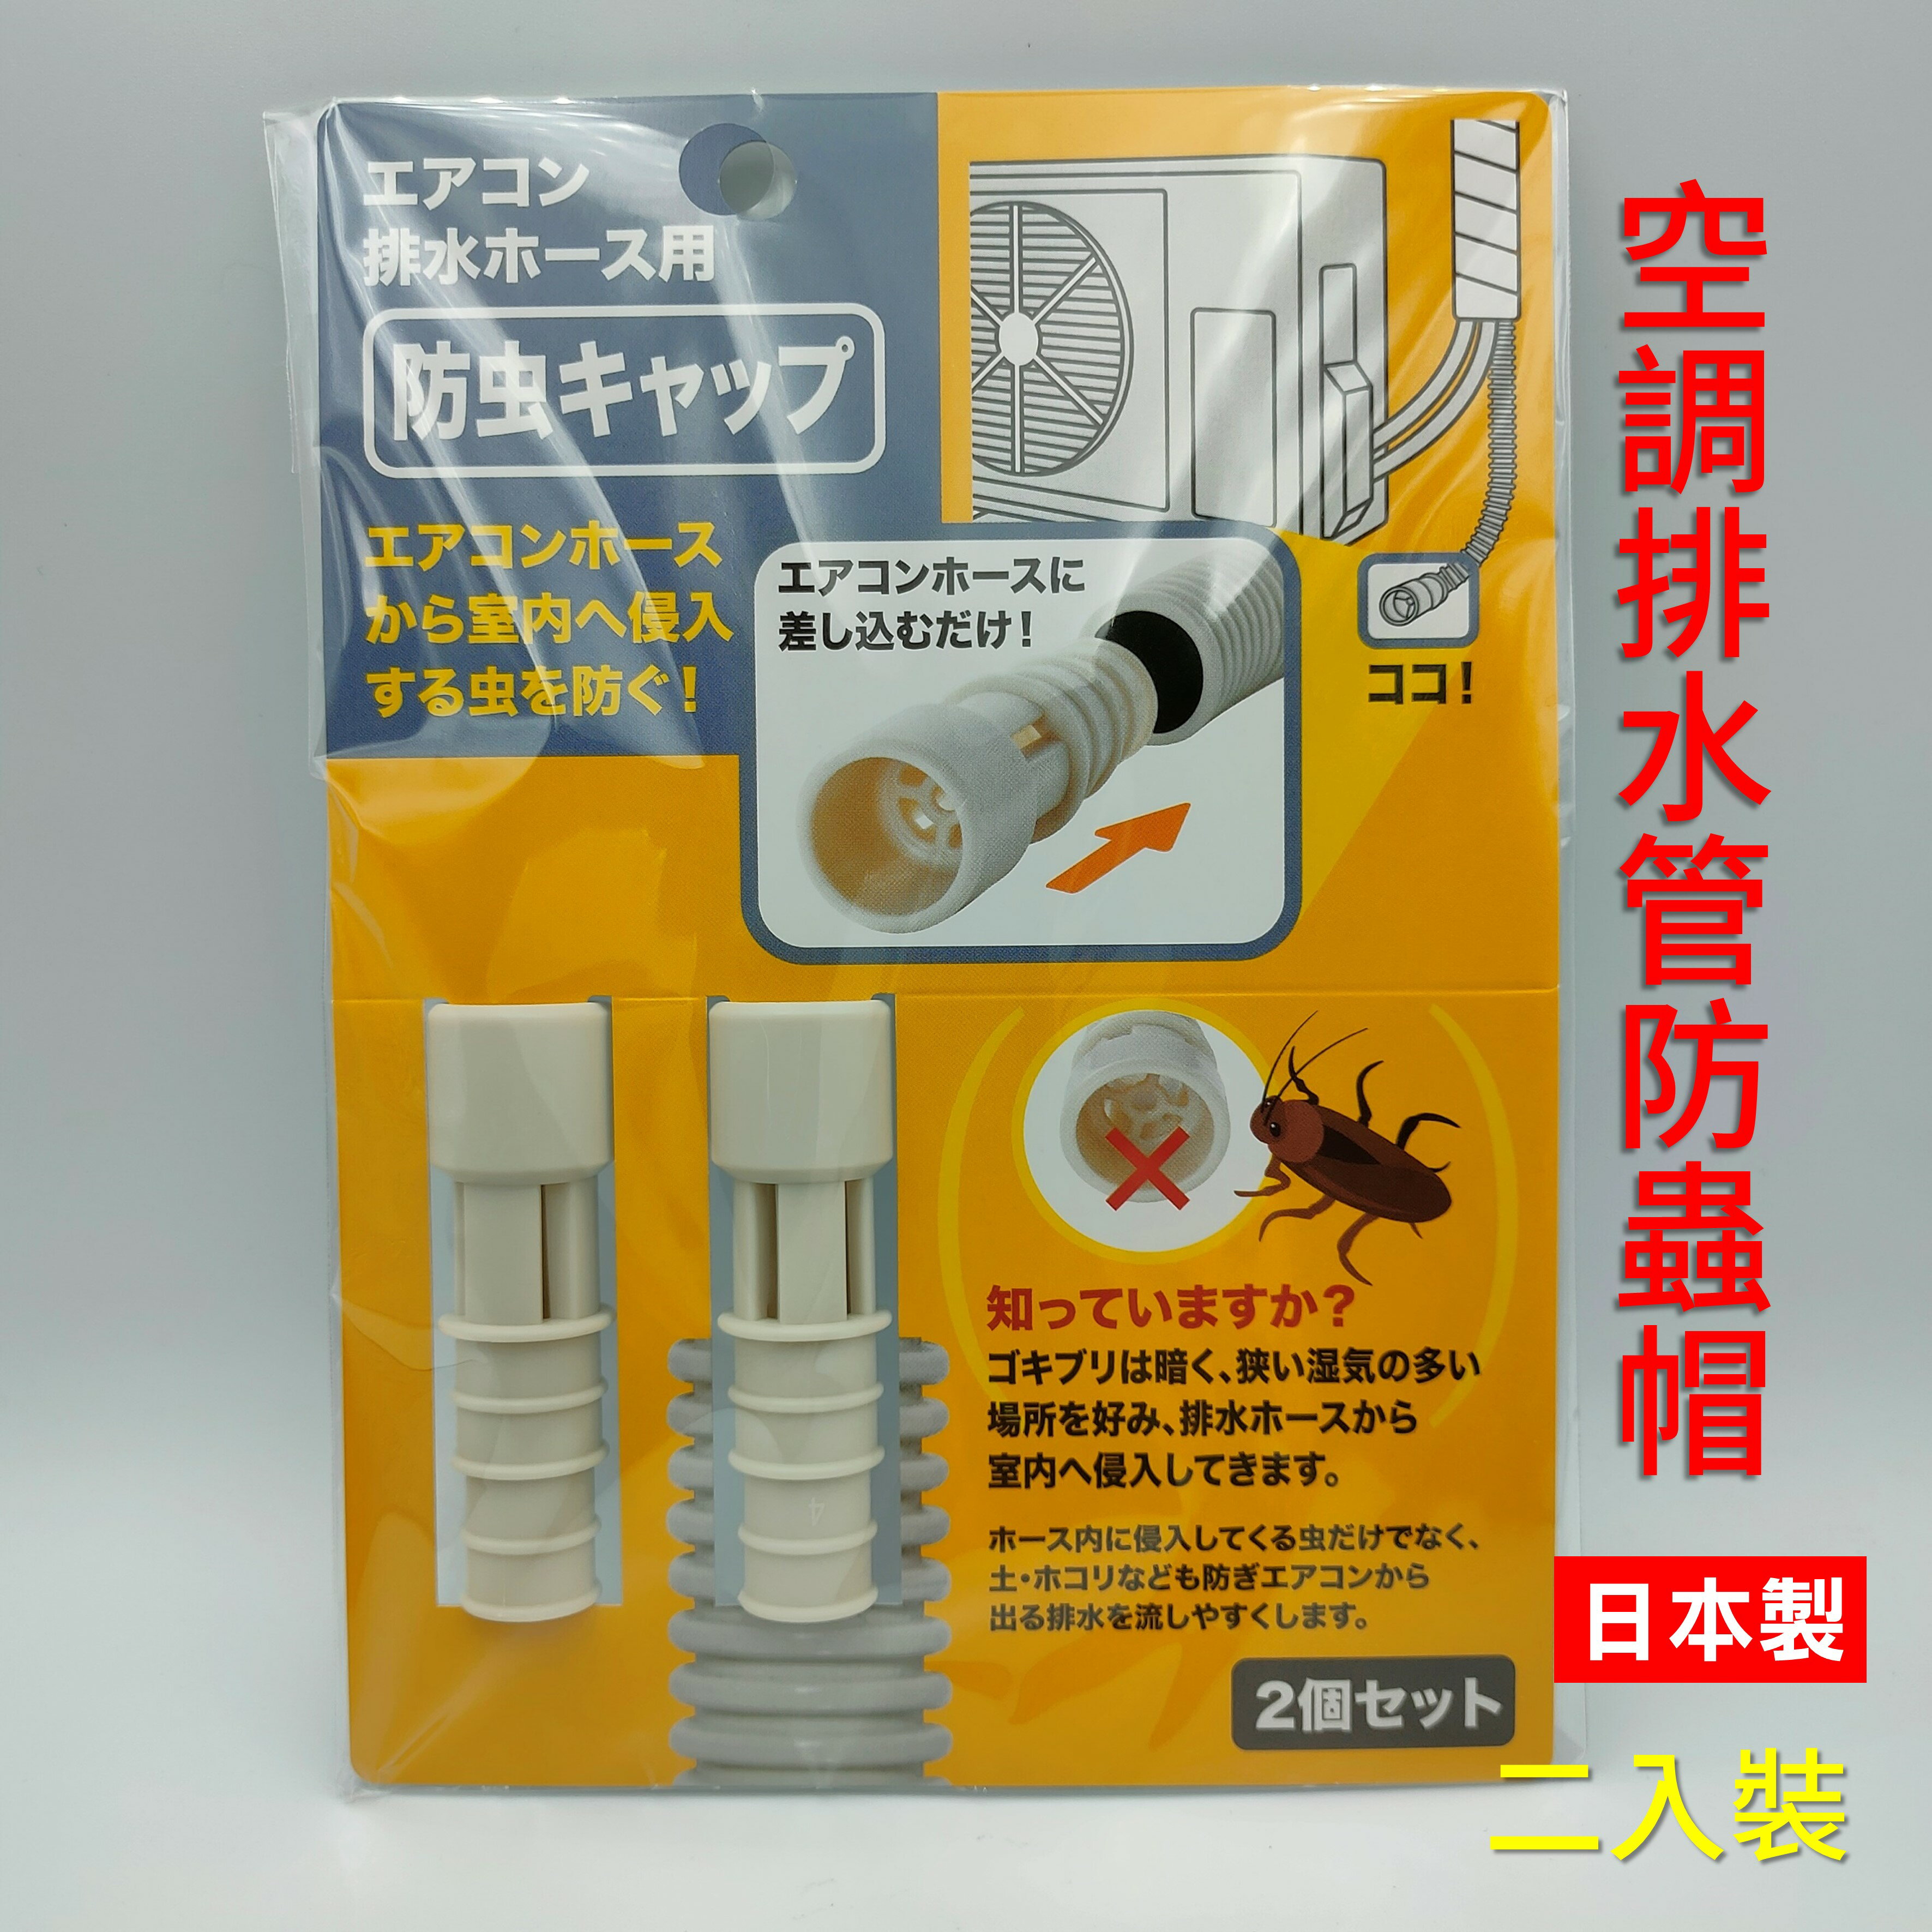 日本 空調排水管防蟲帽 空調防蟲器 冷氣排水孔配件 防止蟑螂等害蟲侵入 防蟲 防蟑螂